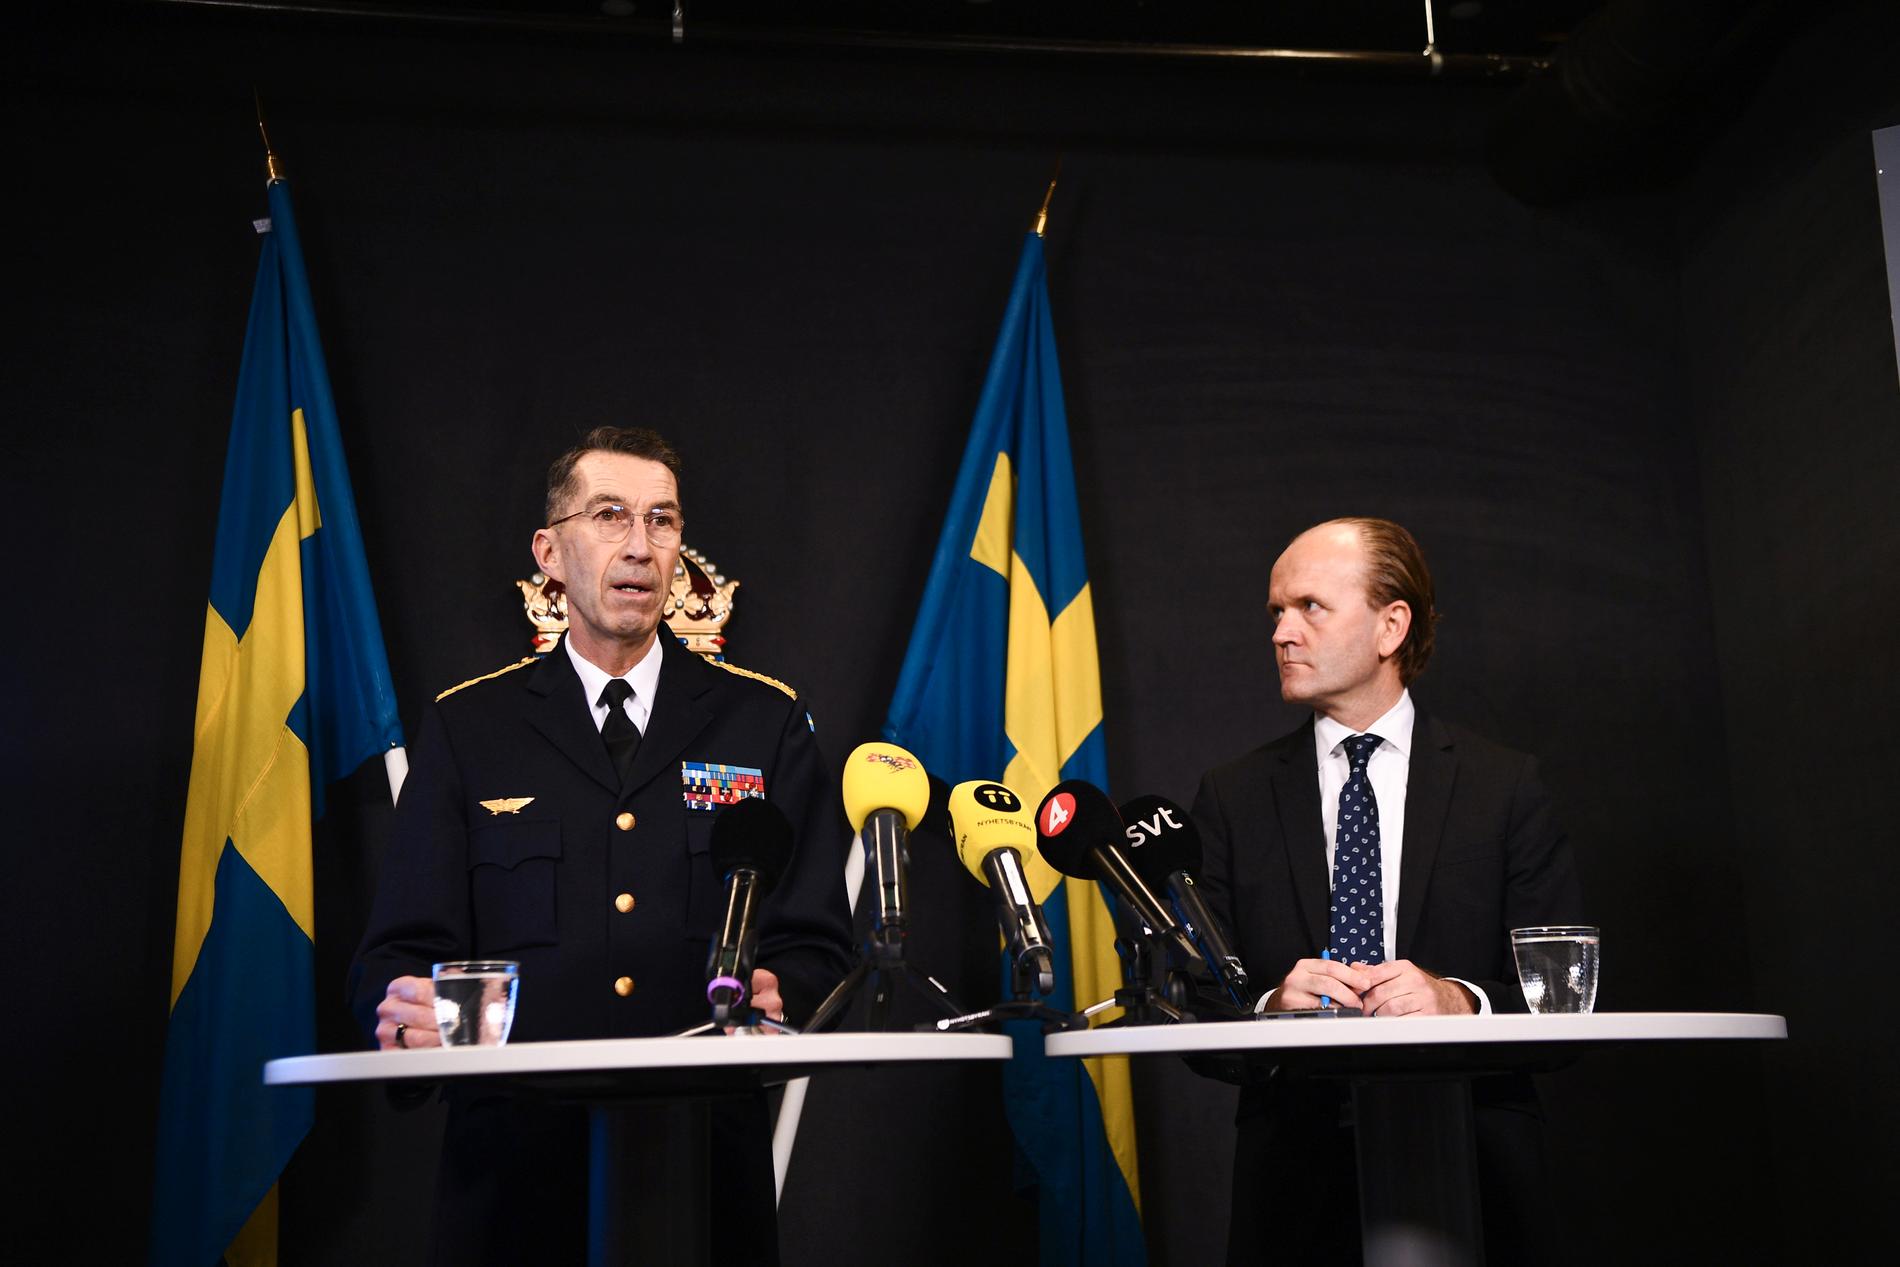 Överbefälhavare Micael Bydén och generaldirektör Mikael Granholm.